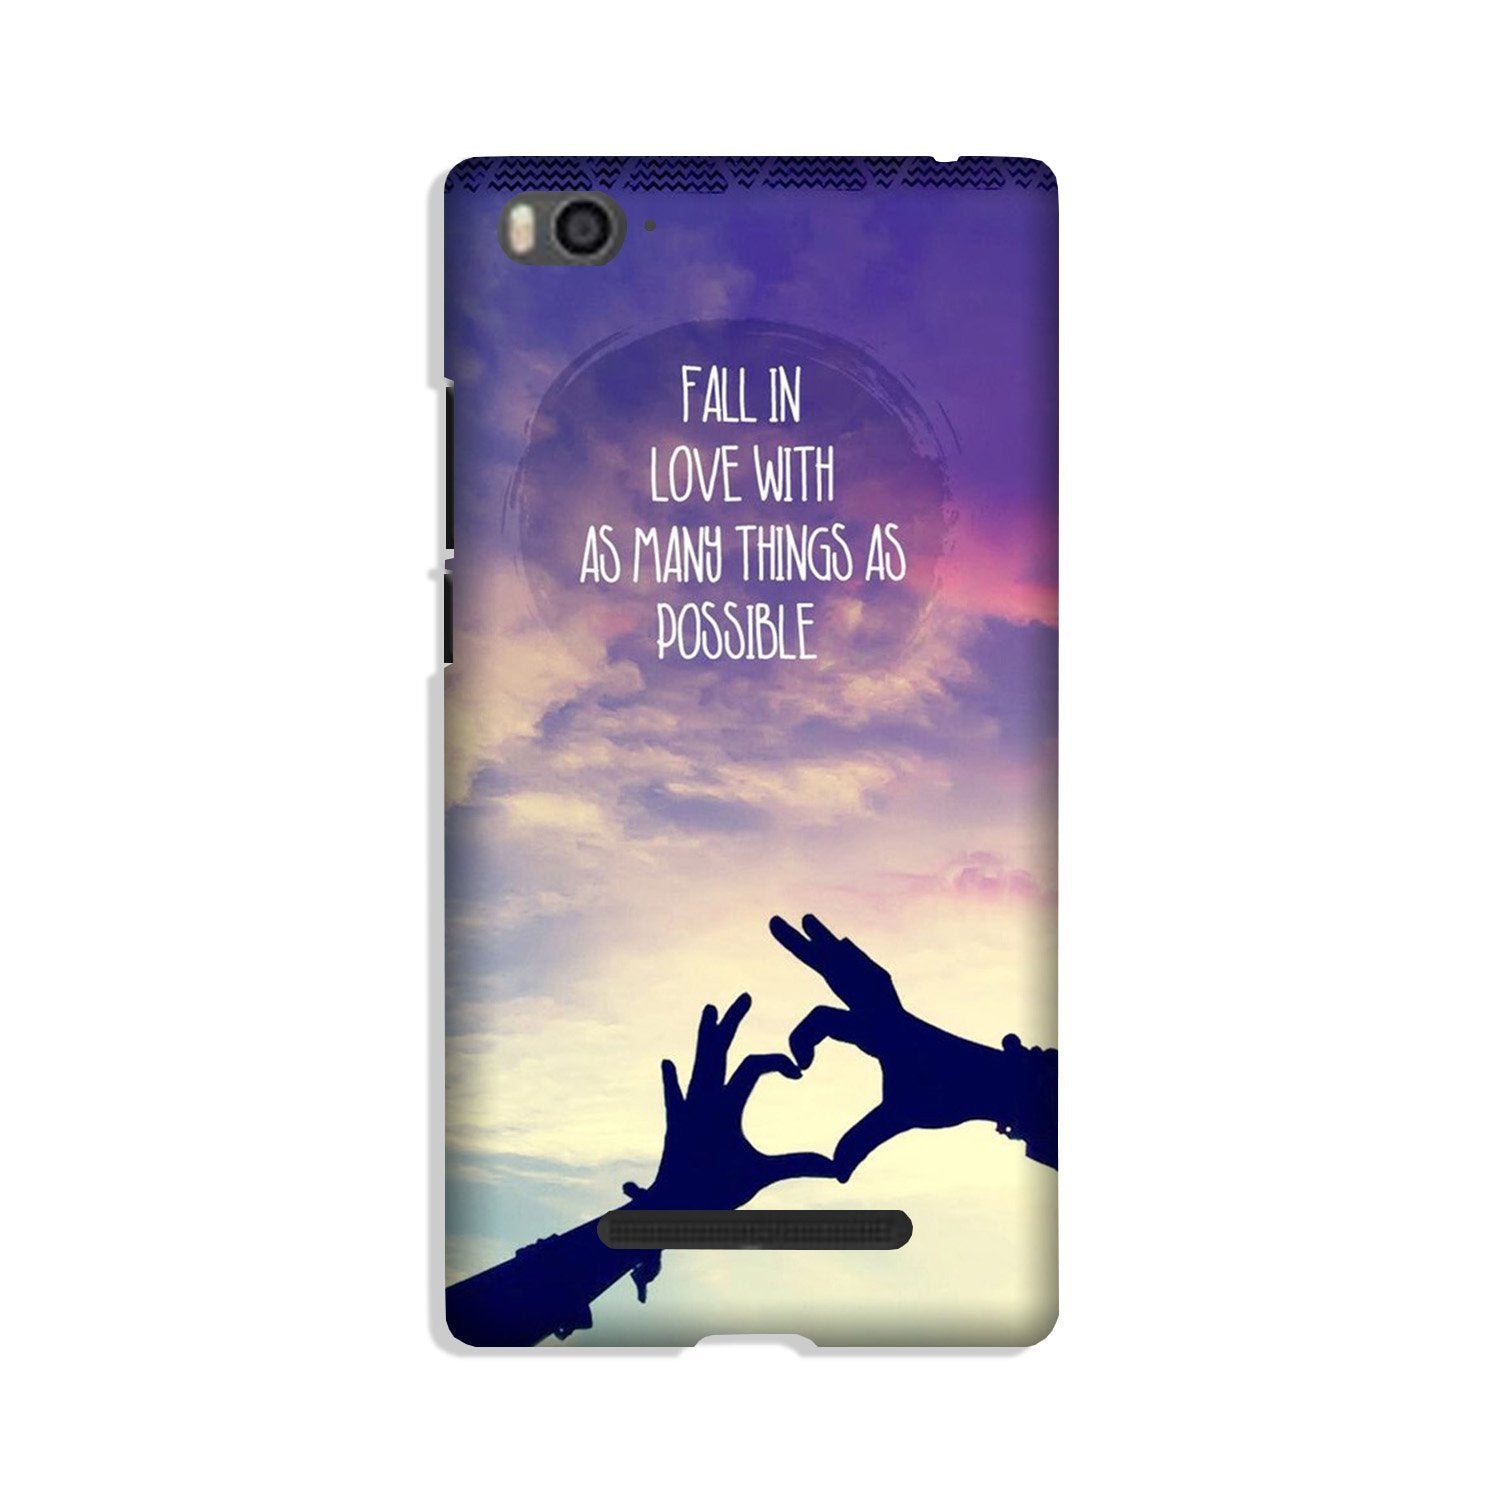 Fall in love Case for Xiaomi Mi 4i